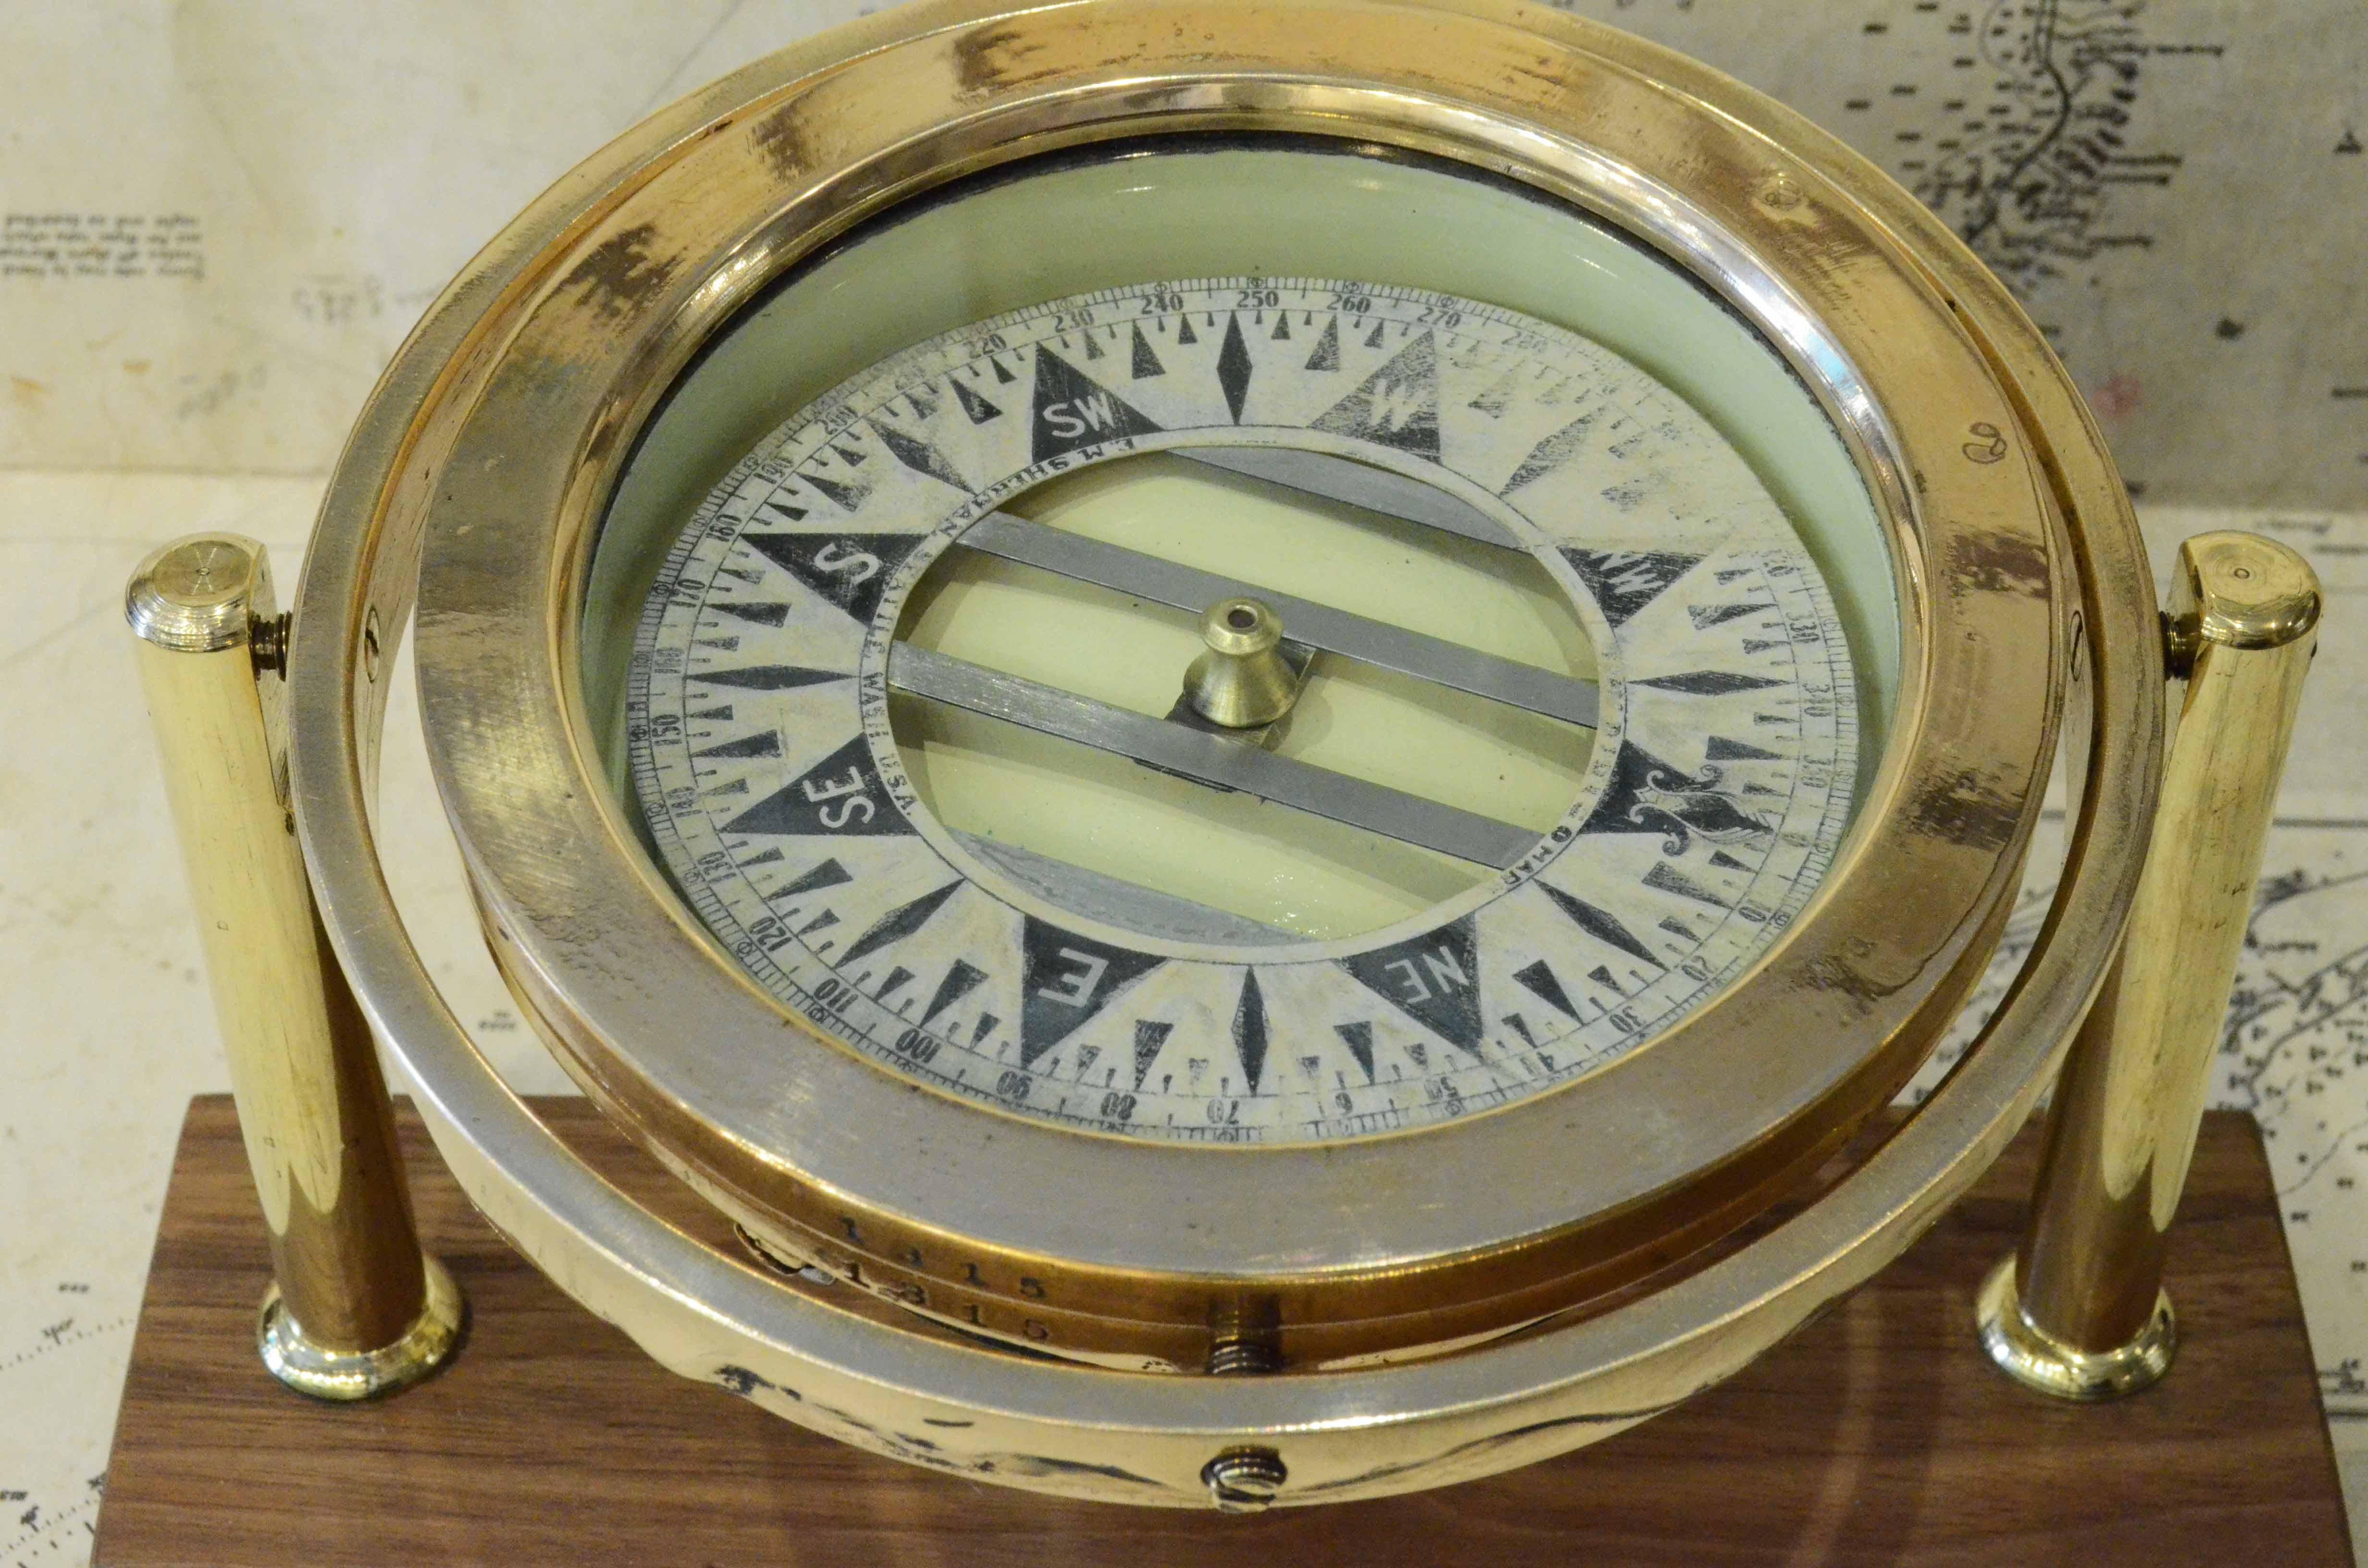 Nautischer Kompass auf Kardan signiert DIRIGO Eugen M. Sherman Seattle USA 1920er Jahre, montiert auf maßgefertigtem Walnuss- und Messingbrett. Acht-Zwanzig-Rose mit Winkelmesser-Kreis. Der Kompass besteht aus einem zylindrischen Gefäß aus Messing